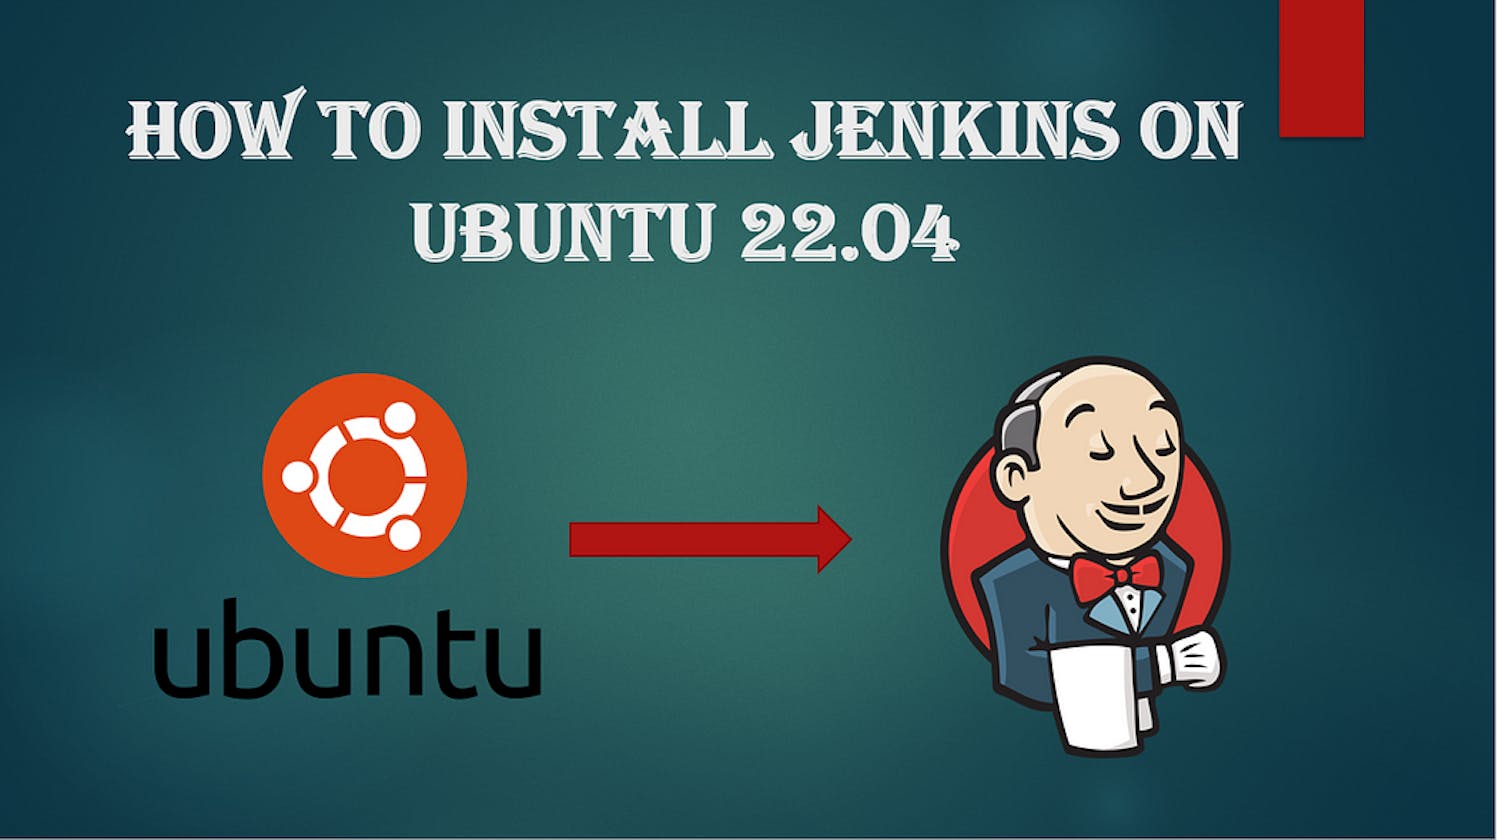 Devops-day-7
How to Install Jenkins on Ubuntu 22.04 AWS Ec2